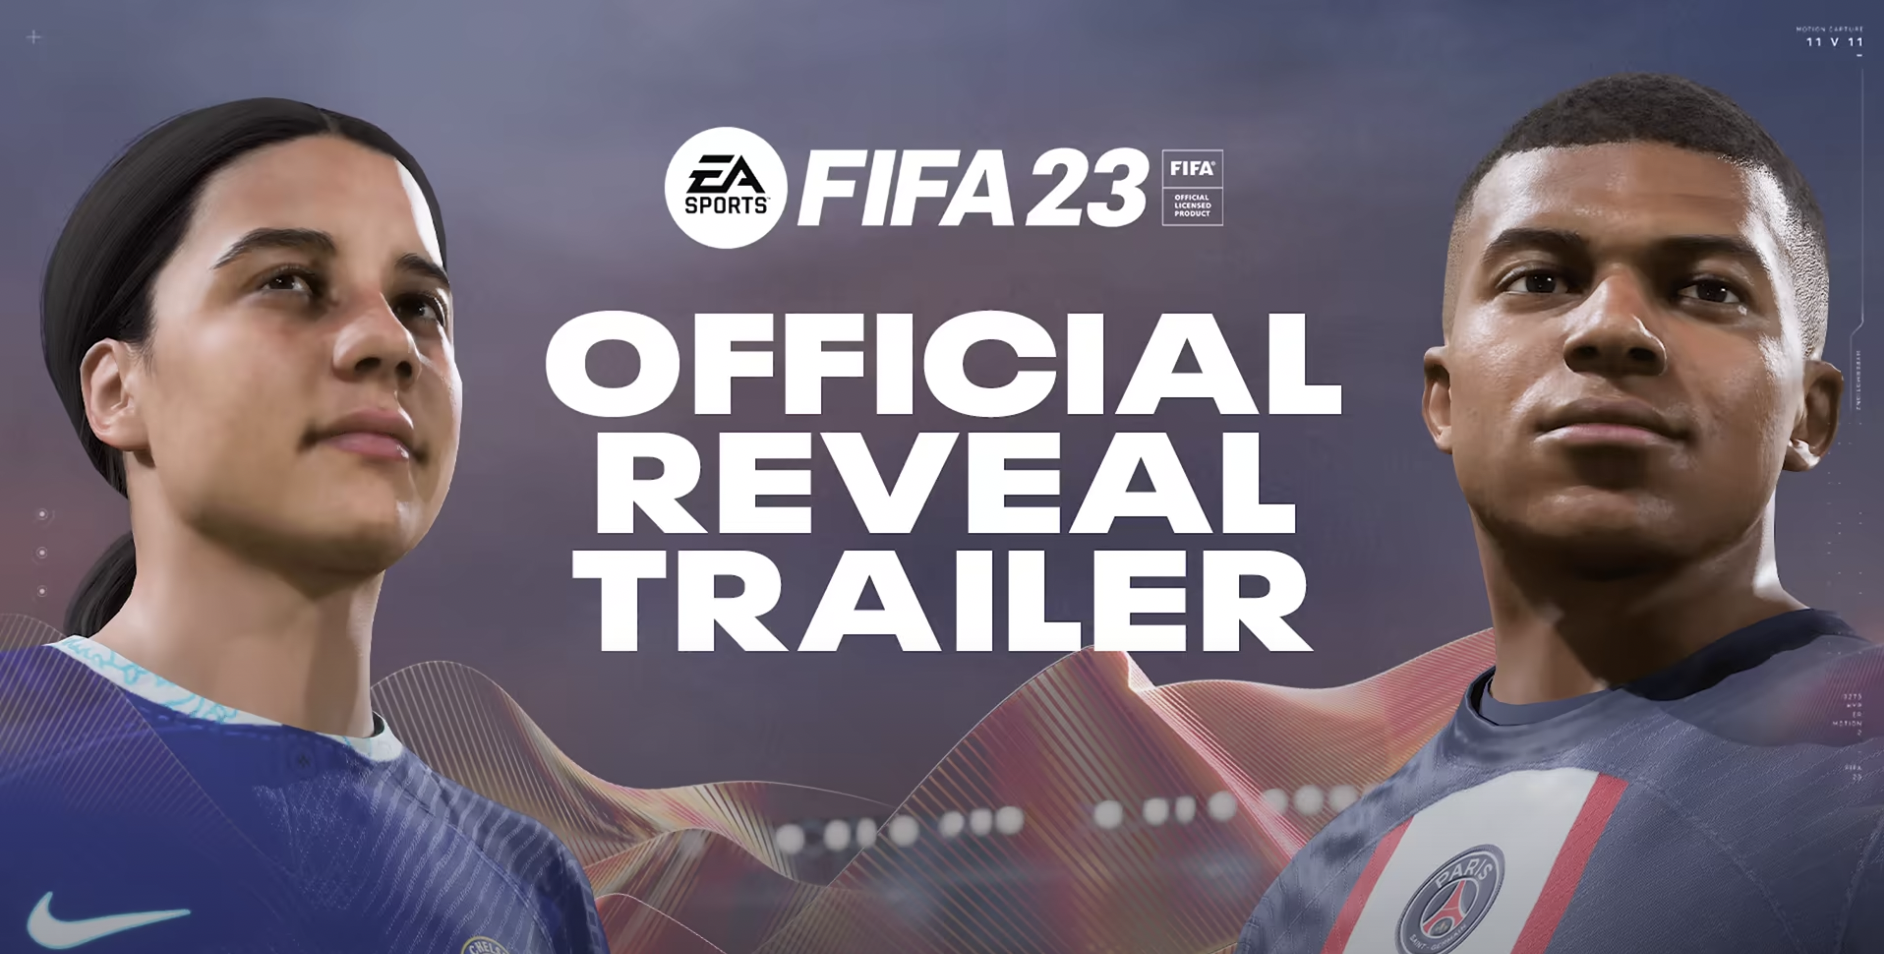 EA SPORTS FIFA 23 Trailer